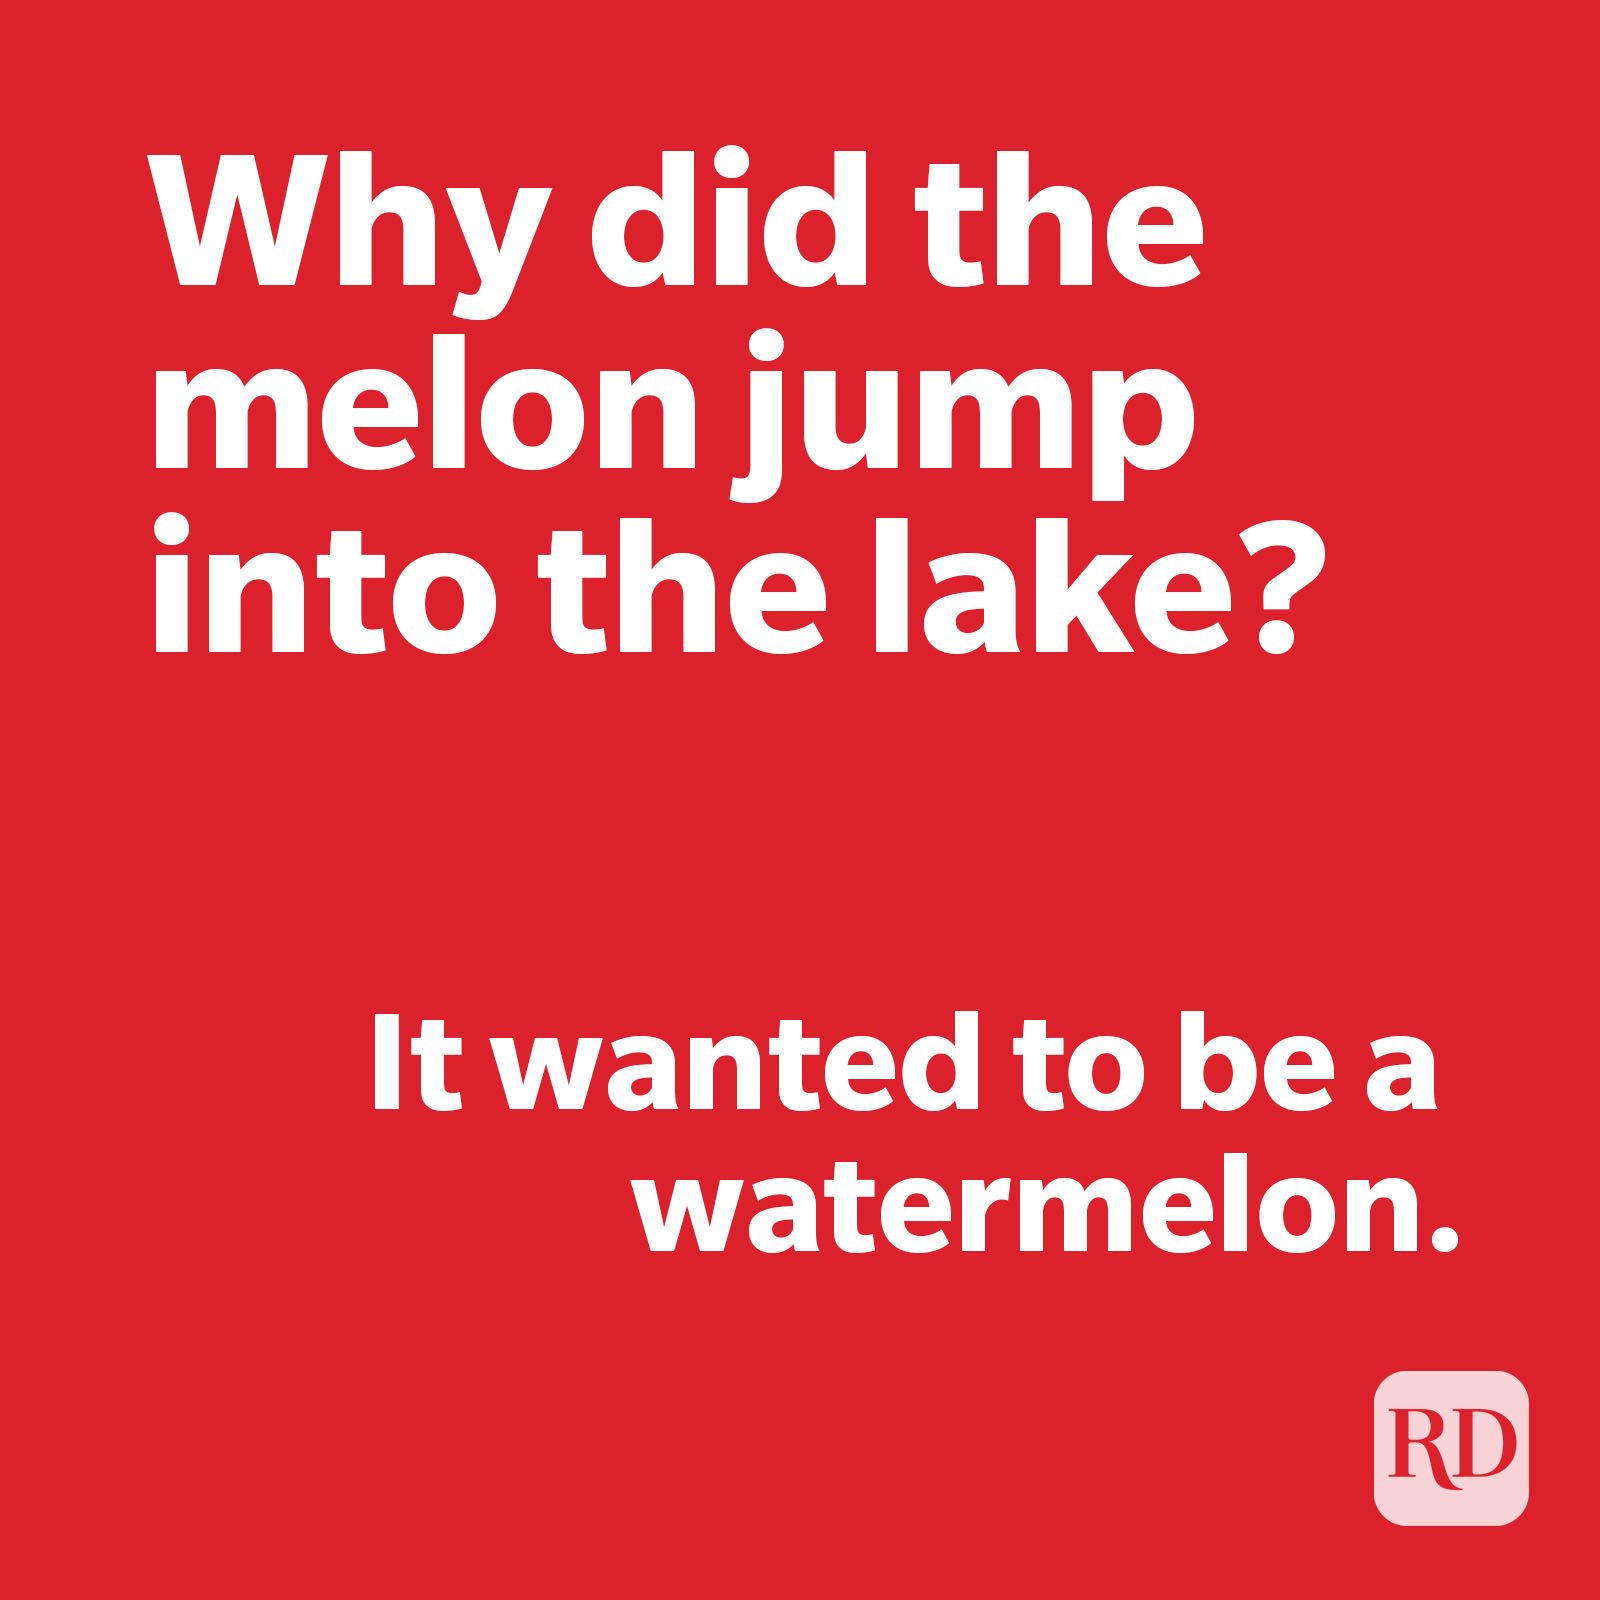 Melon joke